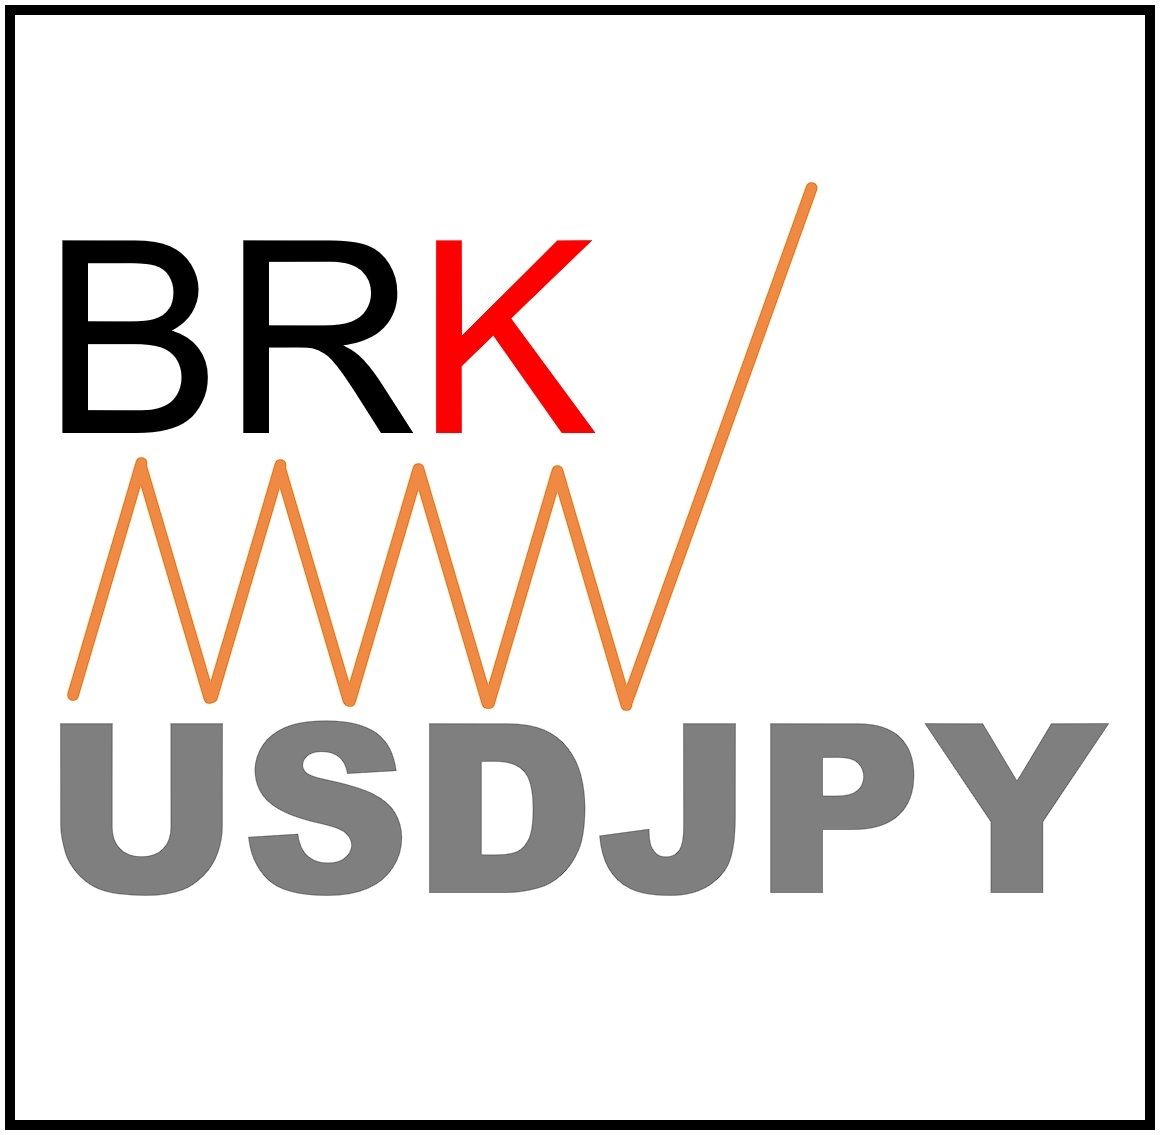 BRK-USDJPY 自動売買